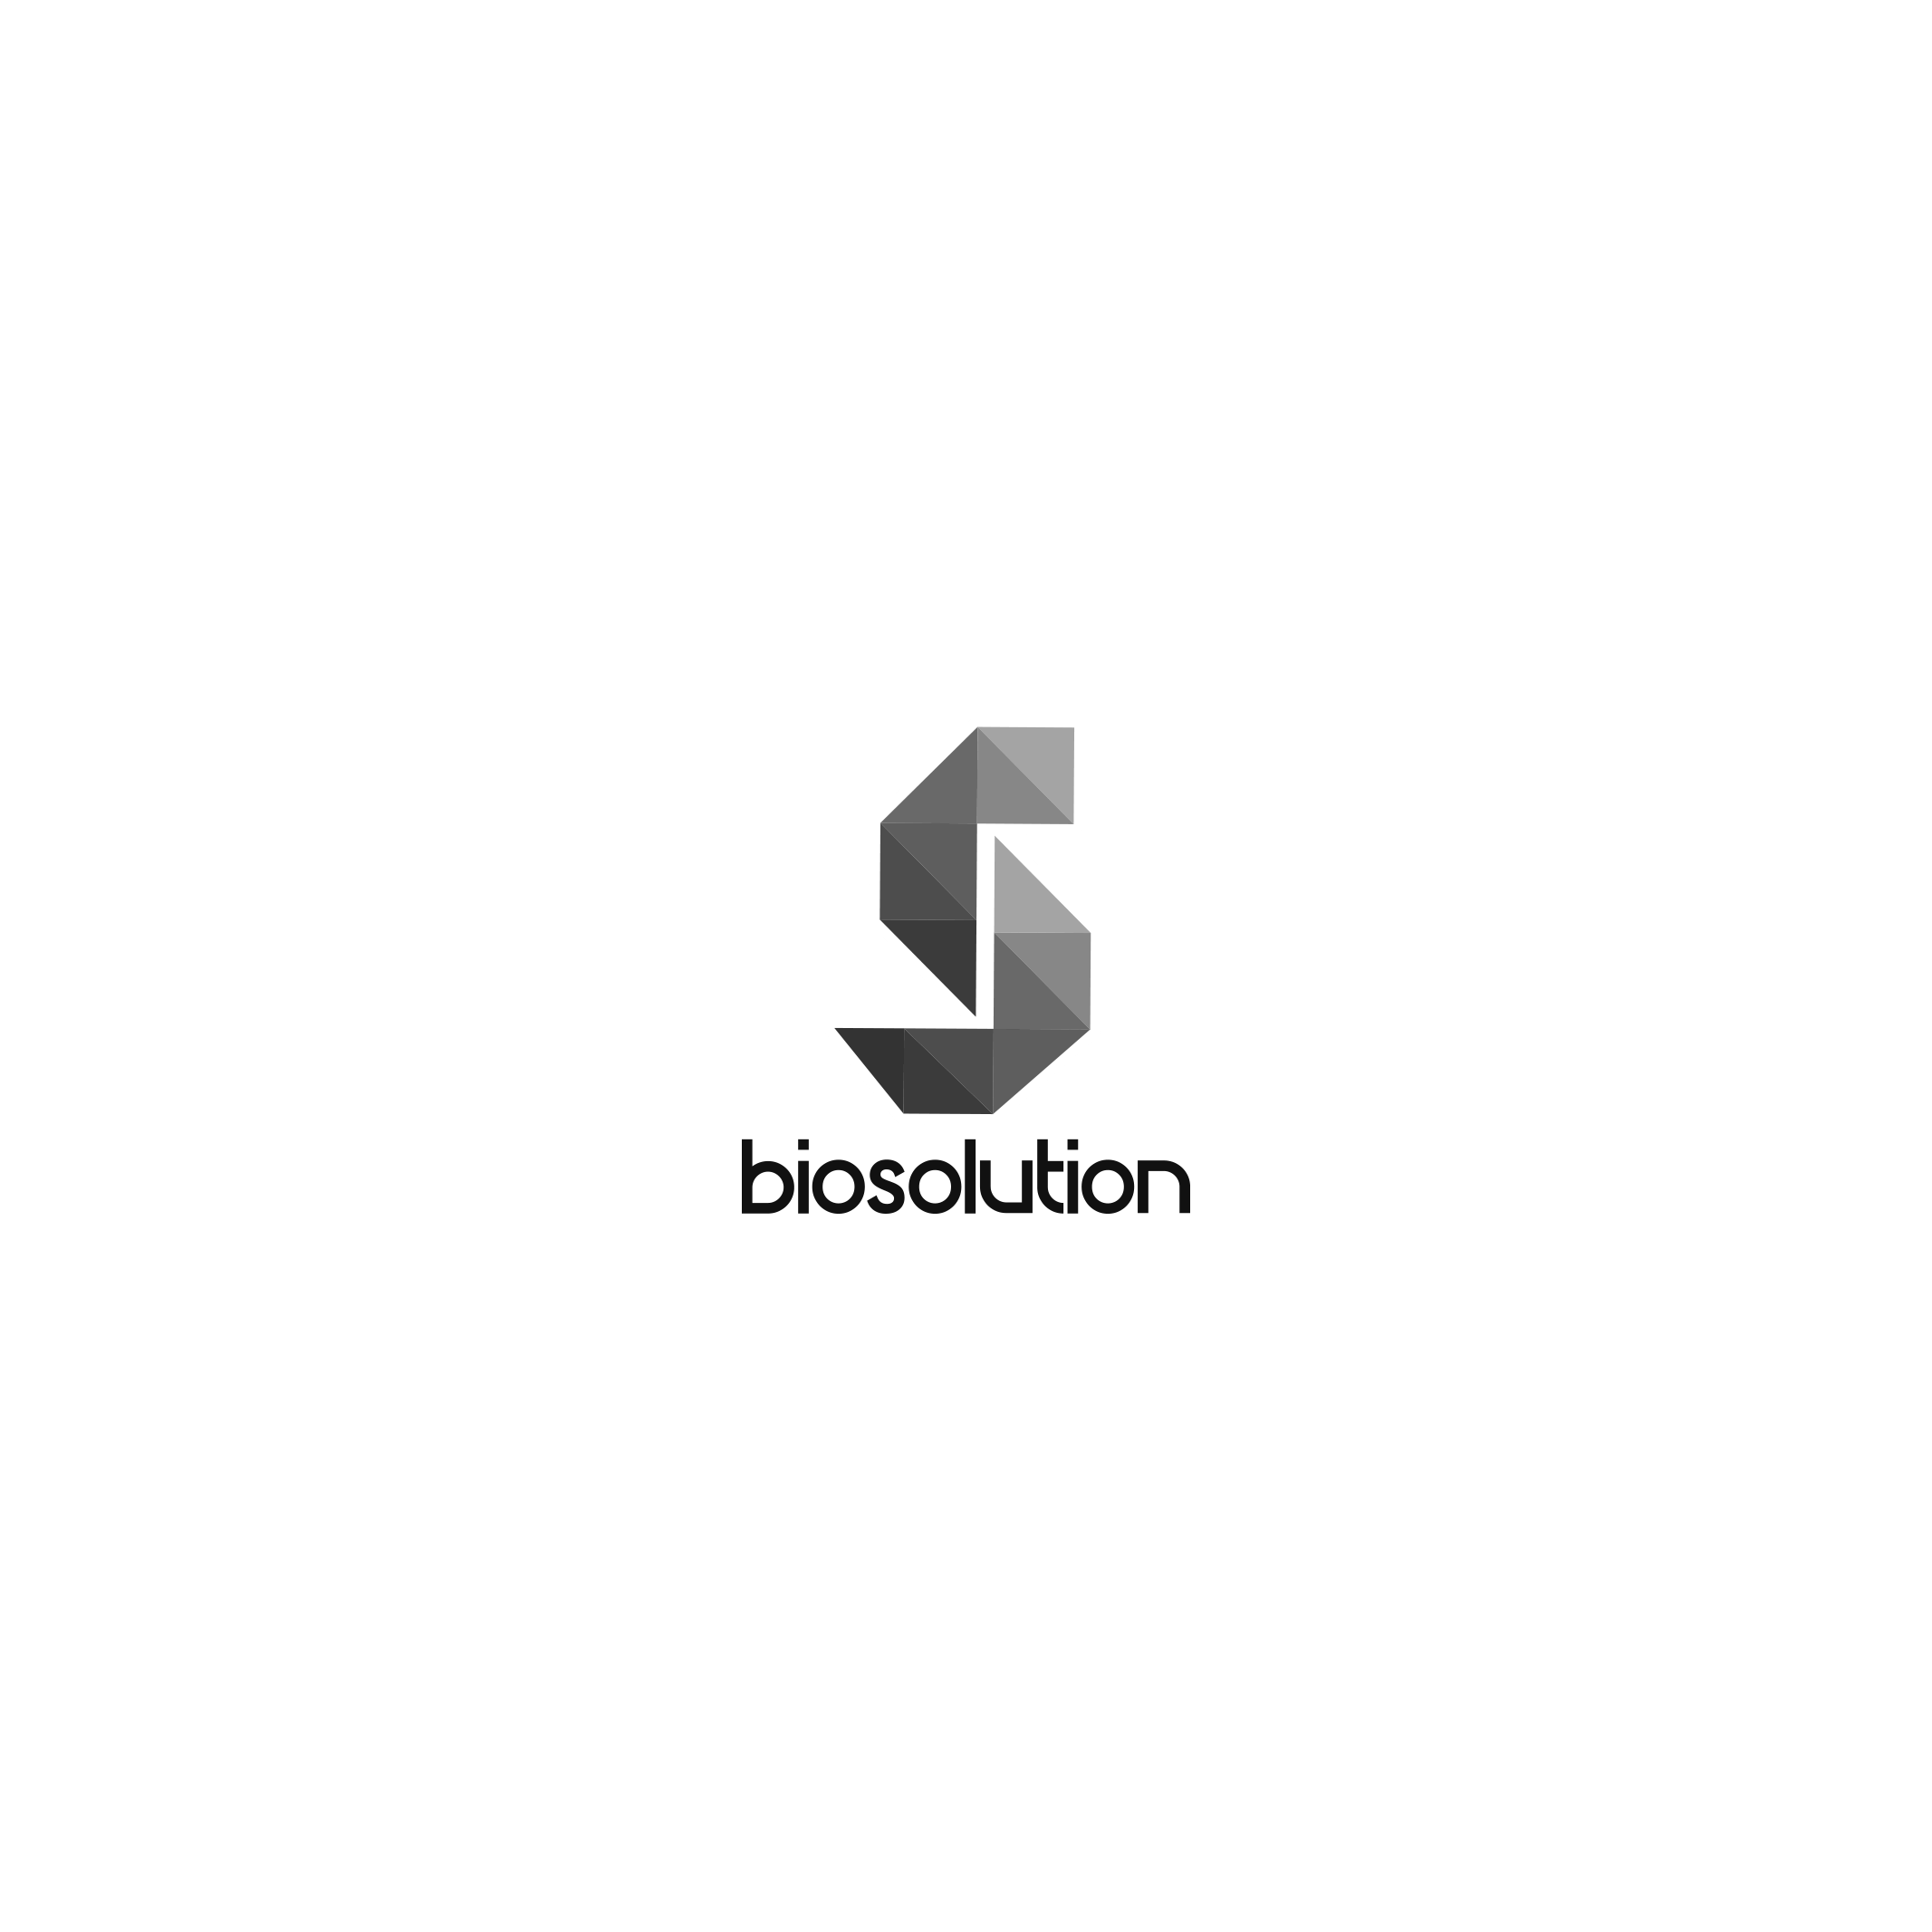 05_biosolution bn